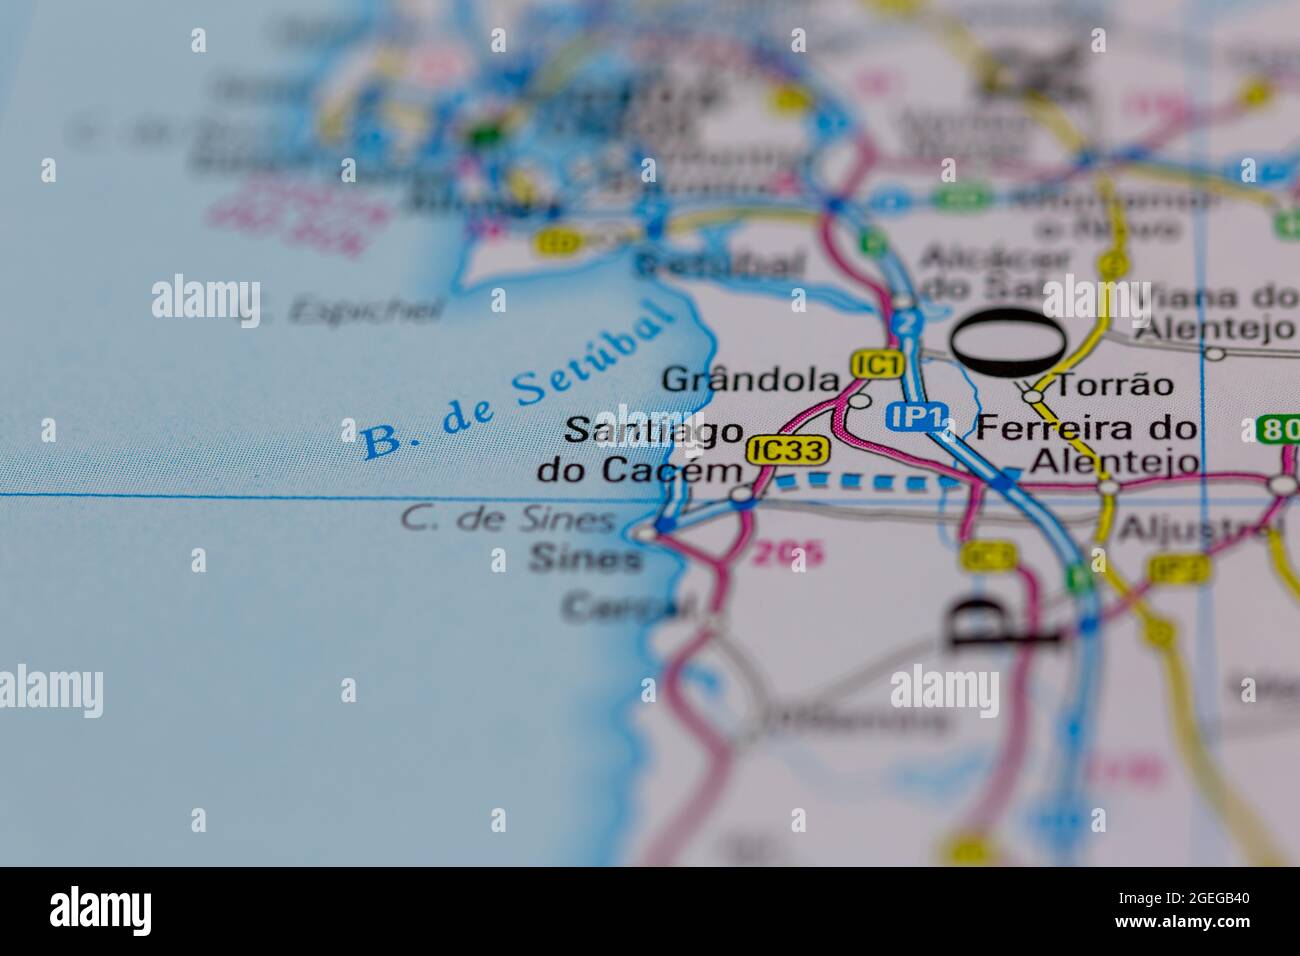 Santiago do Cacem Portugal mostrado en un mapa de carreteras o mapa geográfico Foto de stock